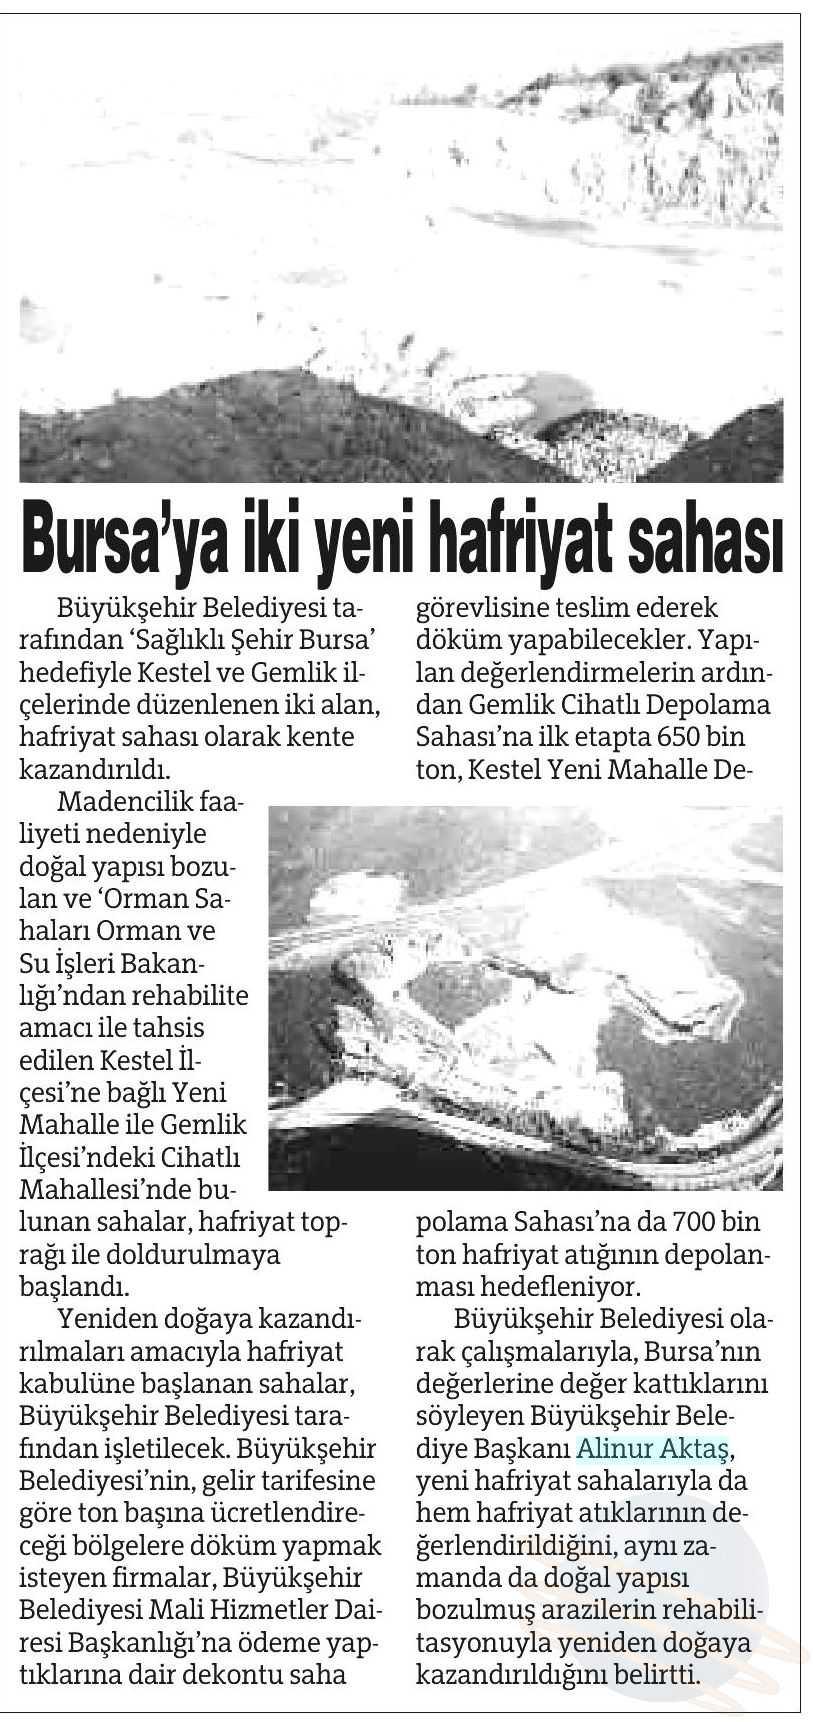 BURSAYA IKI YENI HAFRIYAT SAHASI Yayın Adı : Bursa'da